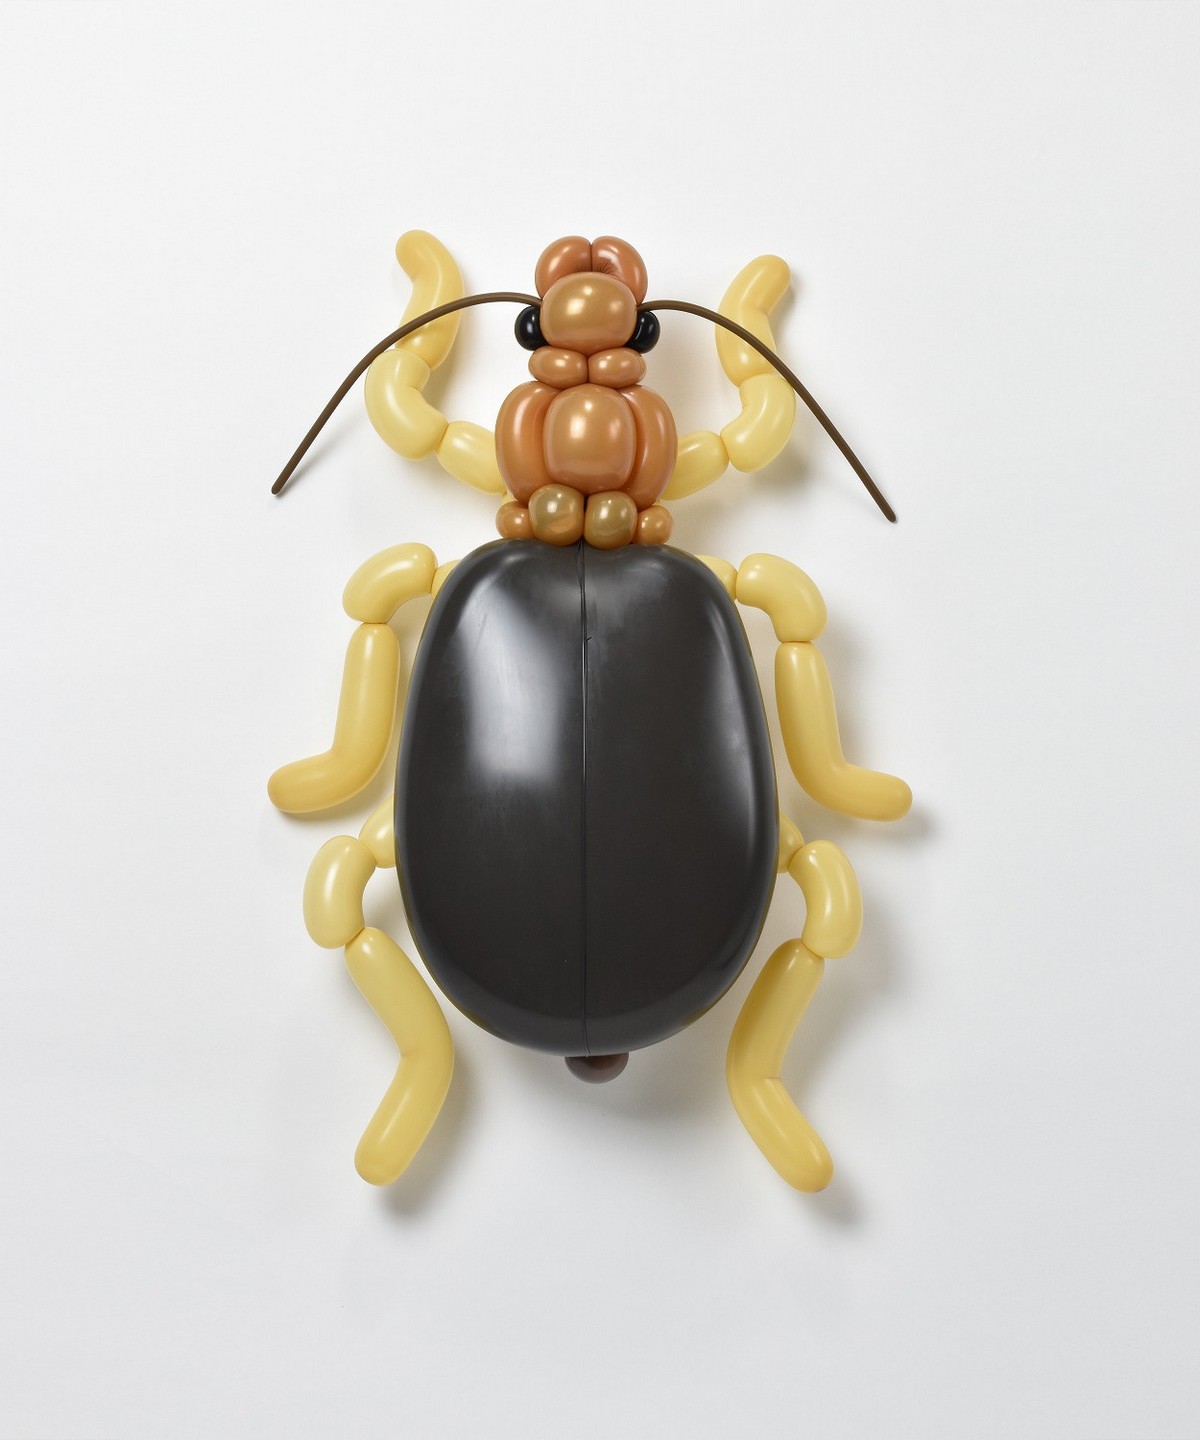 Потрясающие скульптуры животных и насекомых из воздушных шаров